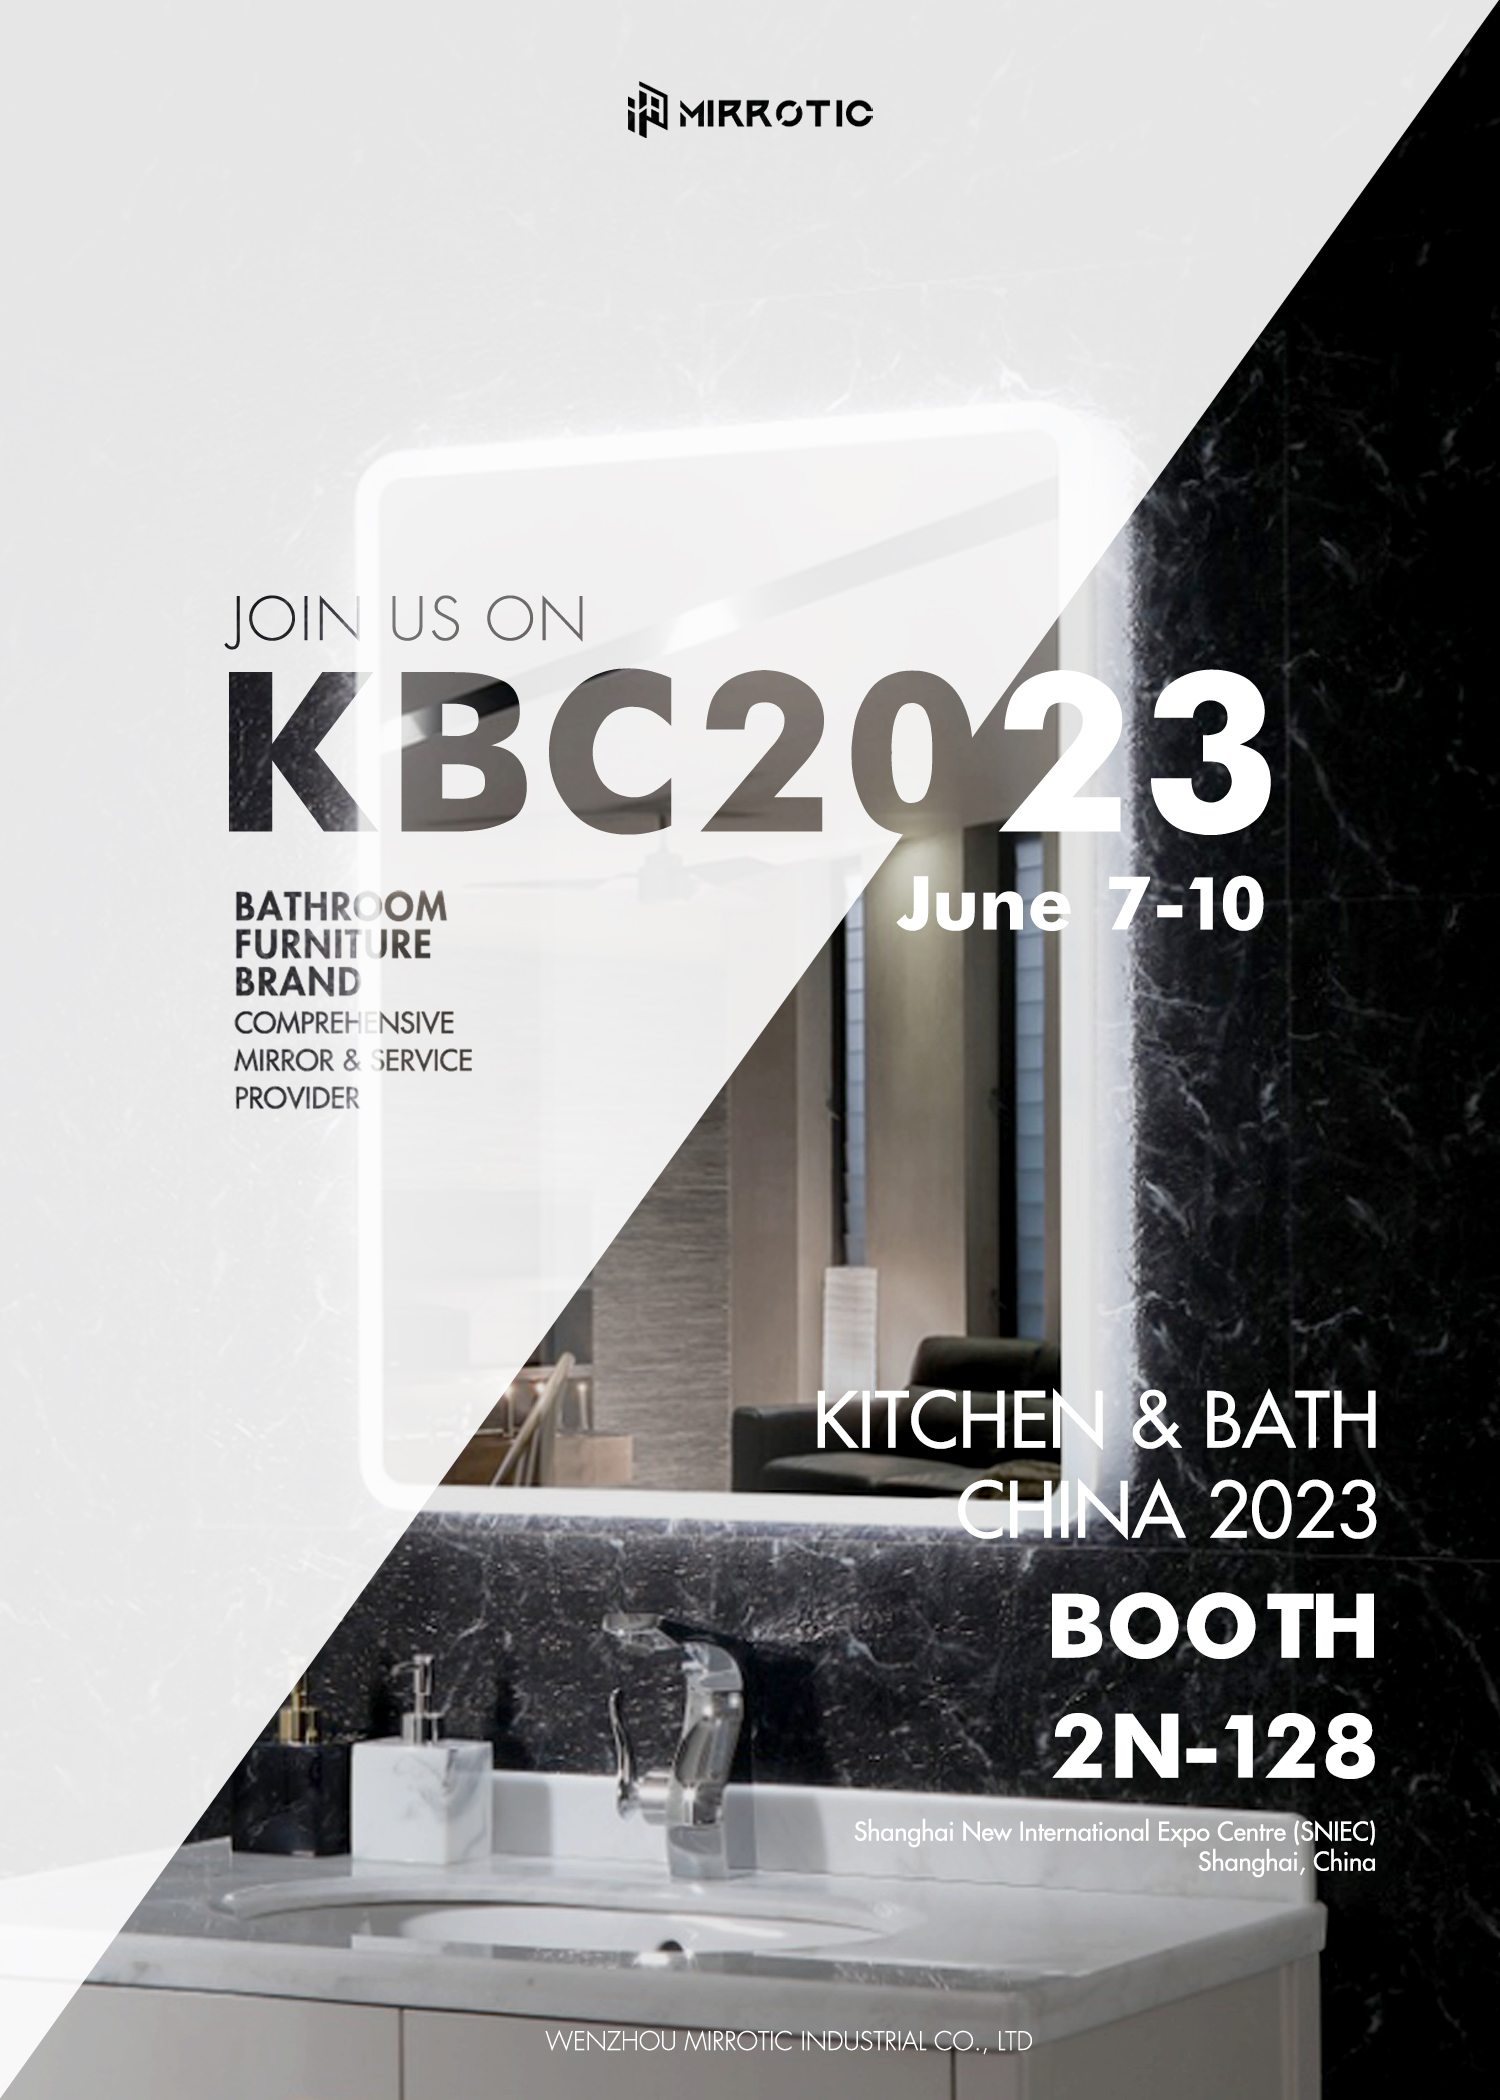 L'exposition KBC2023 est maintenant ouverte et nous vous invitons à visiter notre stand !